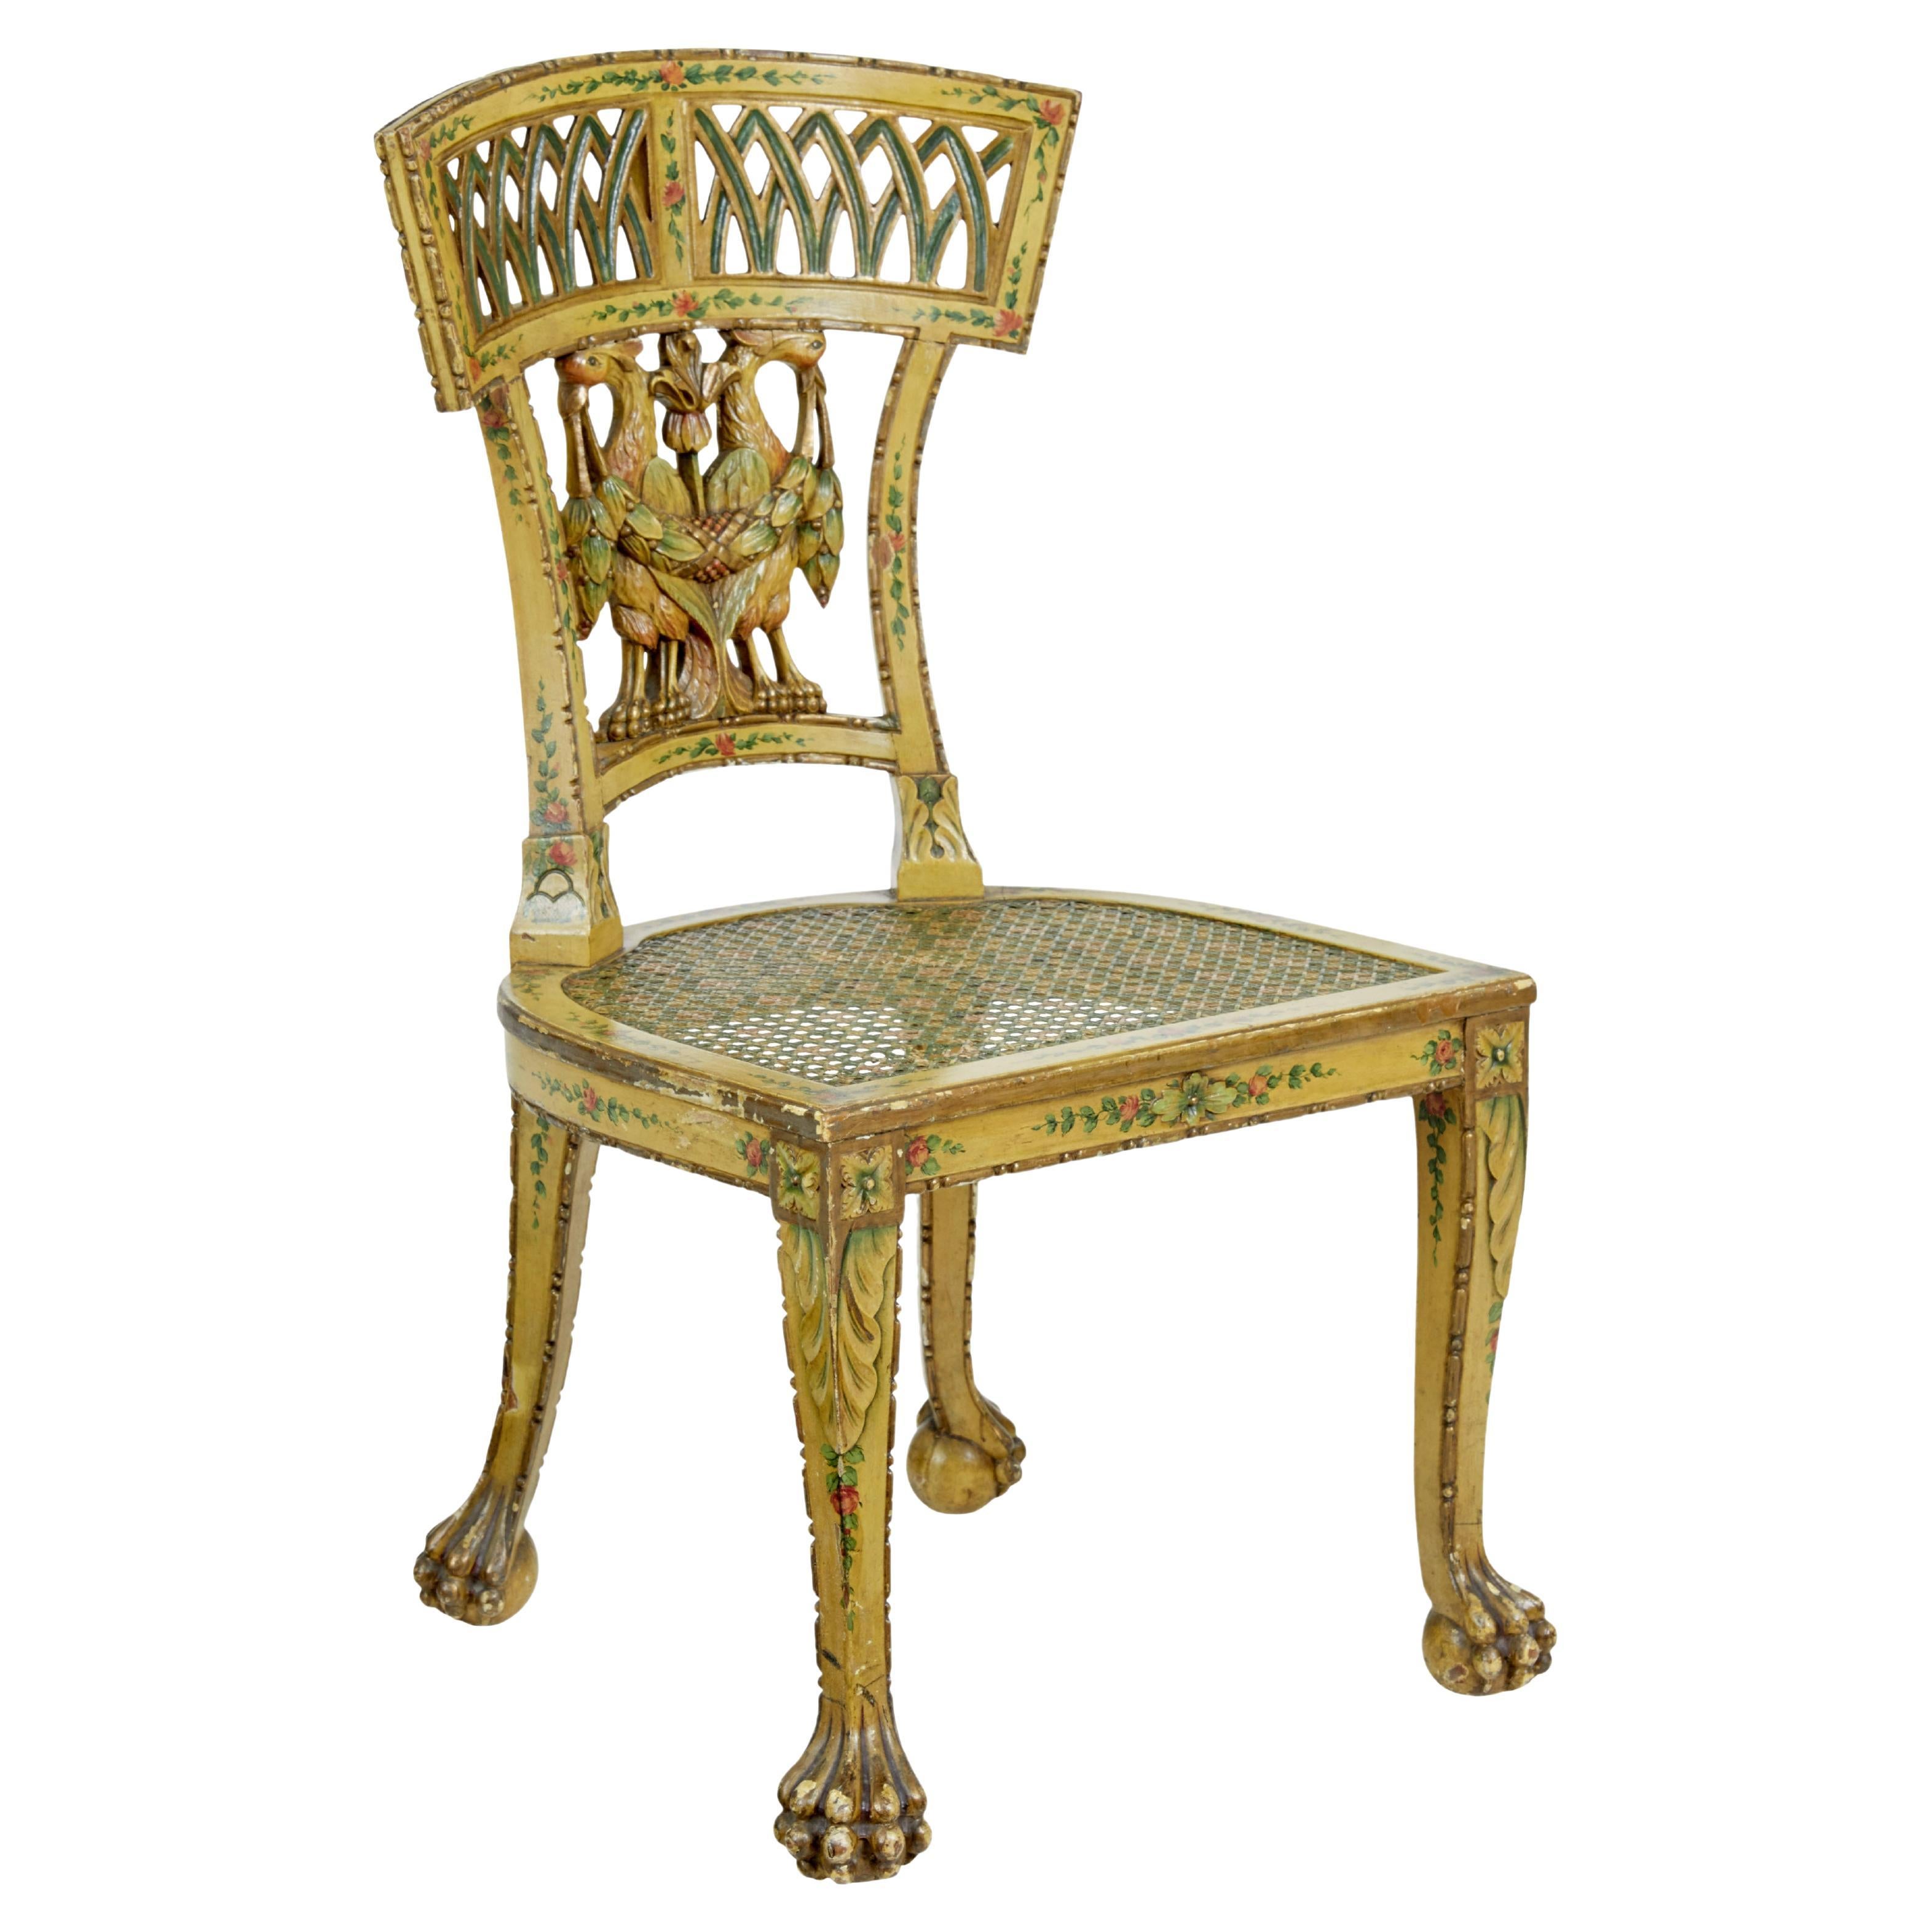 Chaise cannée Biedermeier du 19e siècle, sculptée et peinte